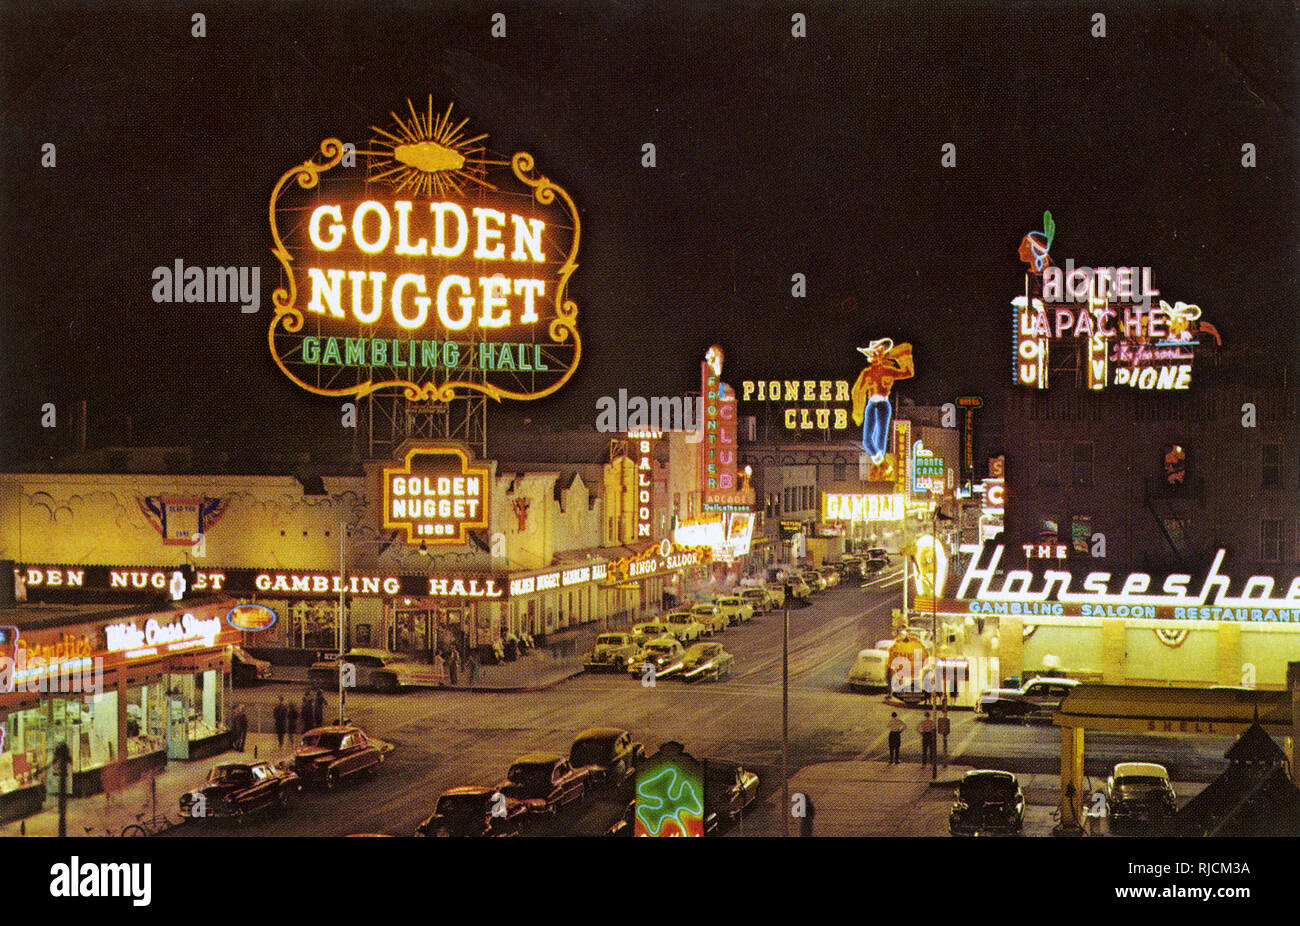 The Golden Nugget, Las Vegas, Nevada, USA Stock Photo